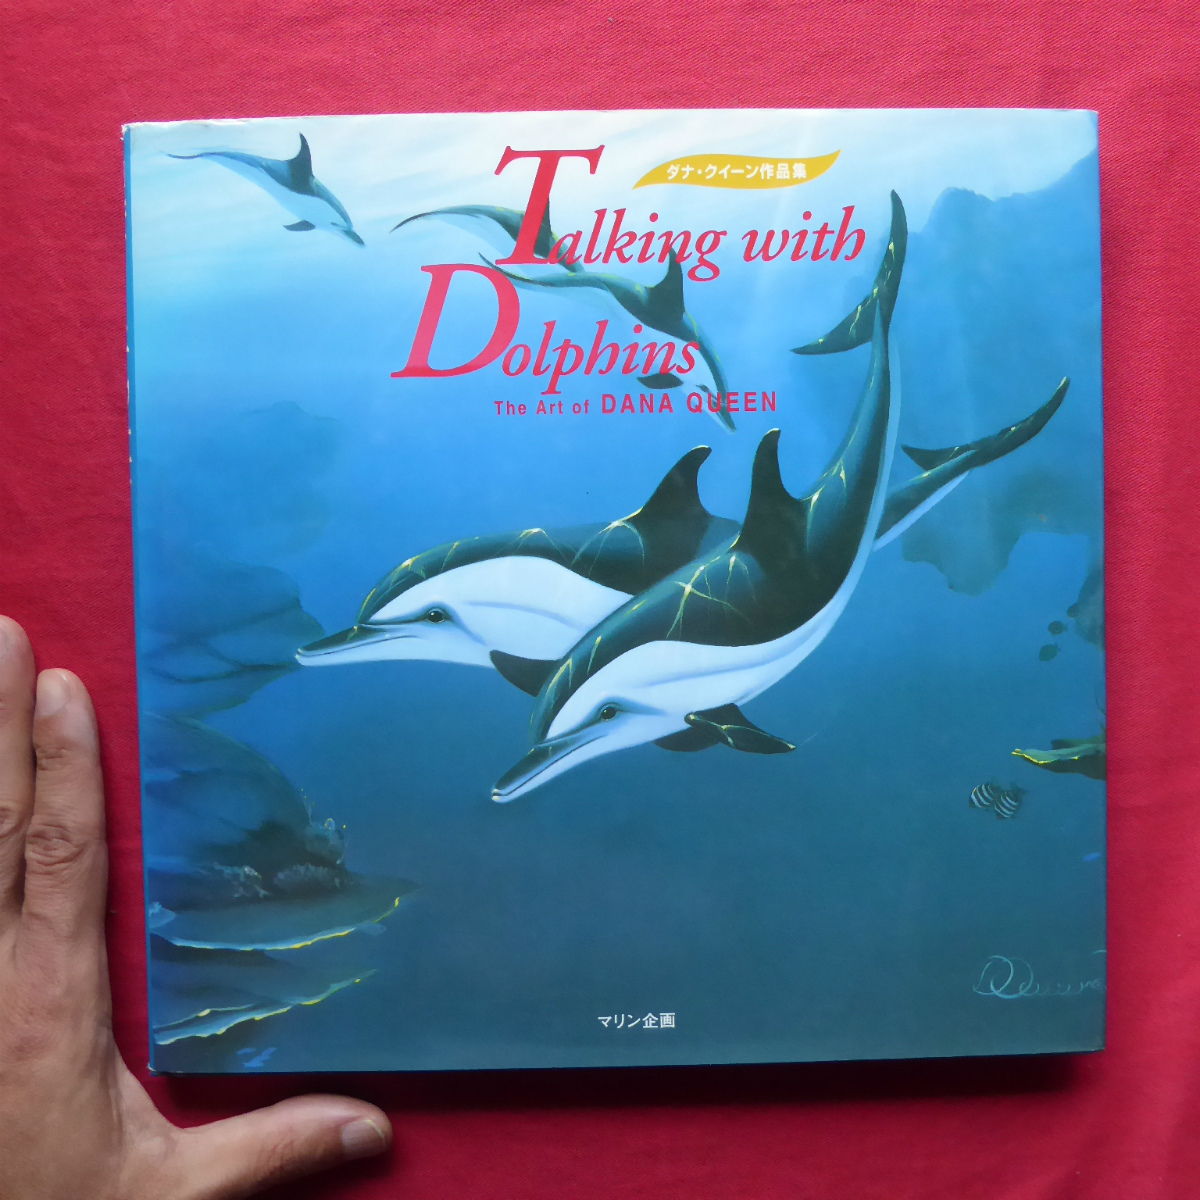 w21 [Collection Dana Queen/Planification marine/1995] Dauphins bien-aimés/Un artiste louant la nature, Peinture, Livre d'art, Collection, Catalogue